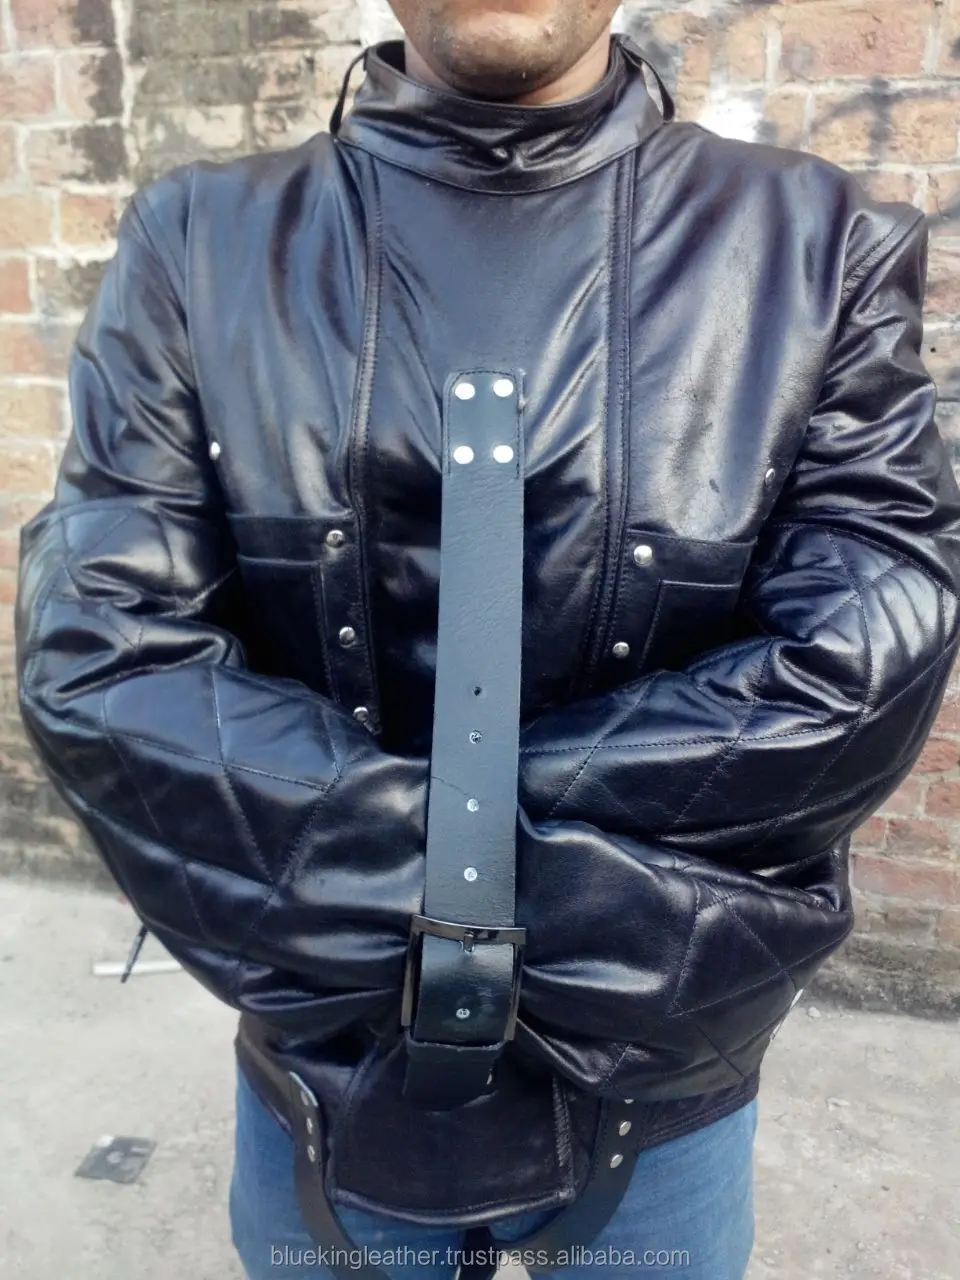 Heavy Bondage Pure Leather Straight Jacket - Buy Bondage Pure ...